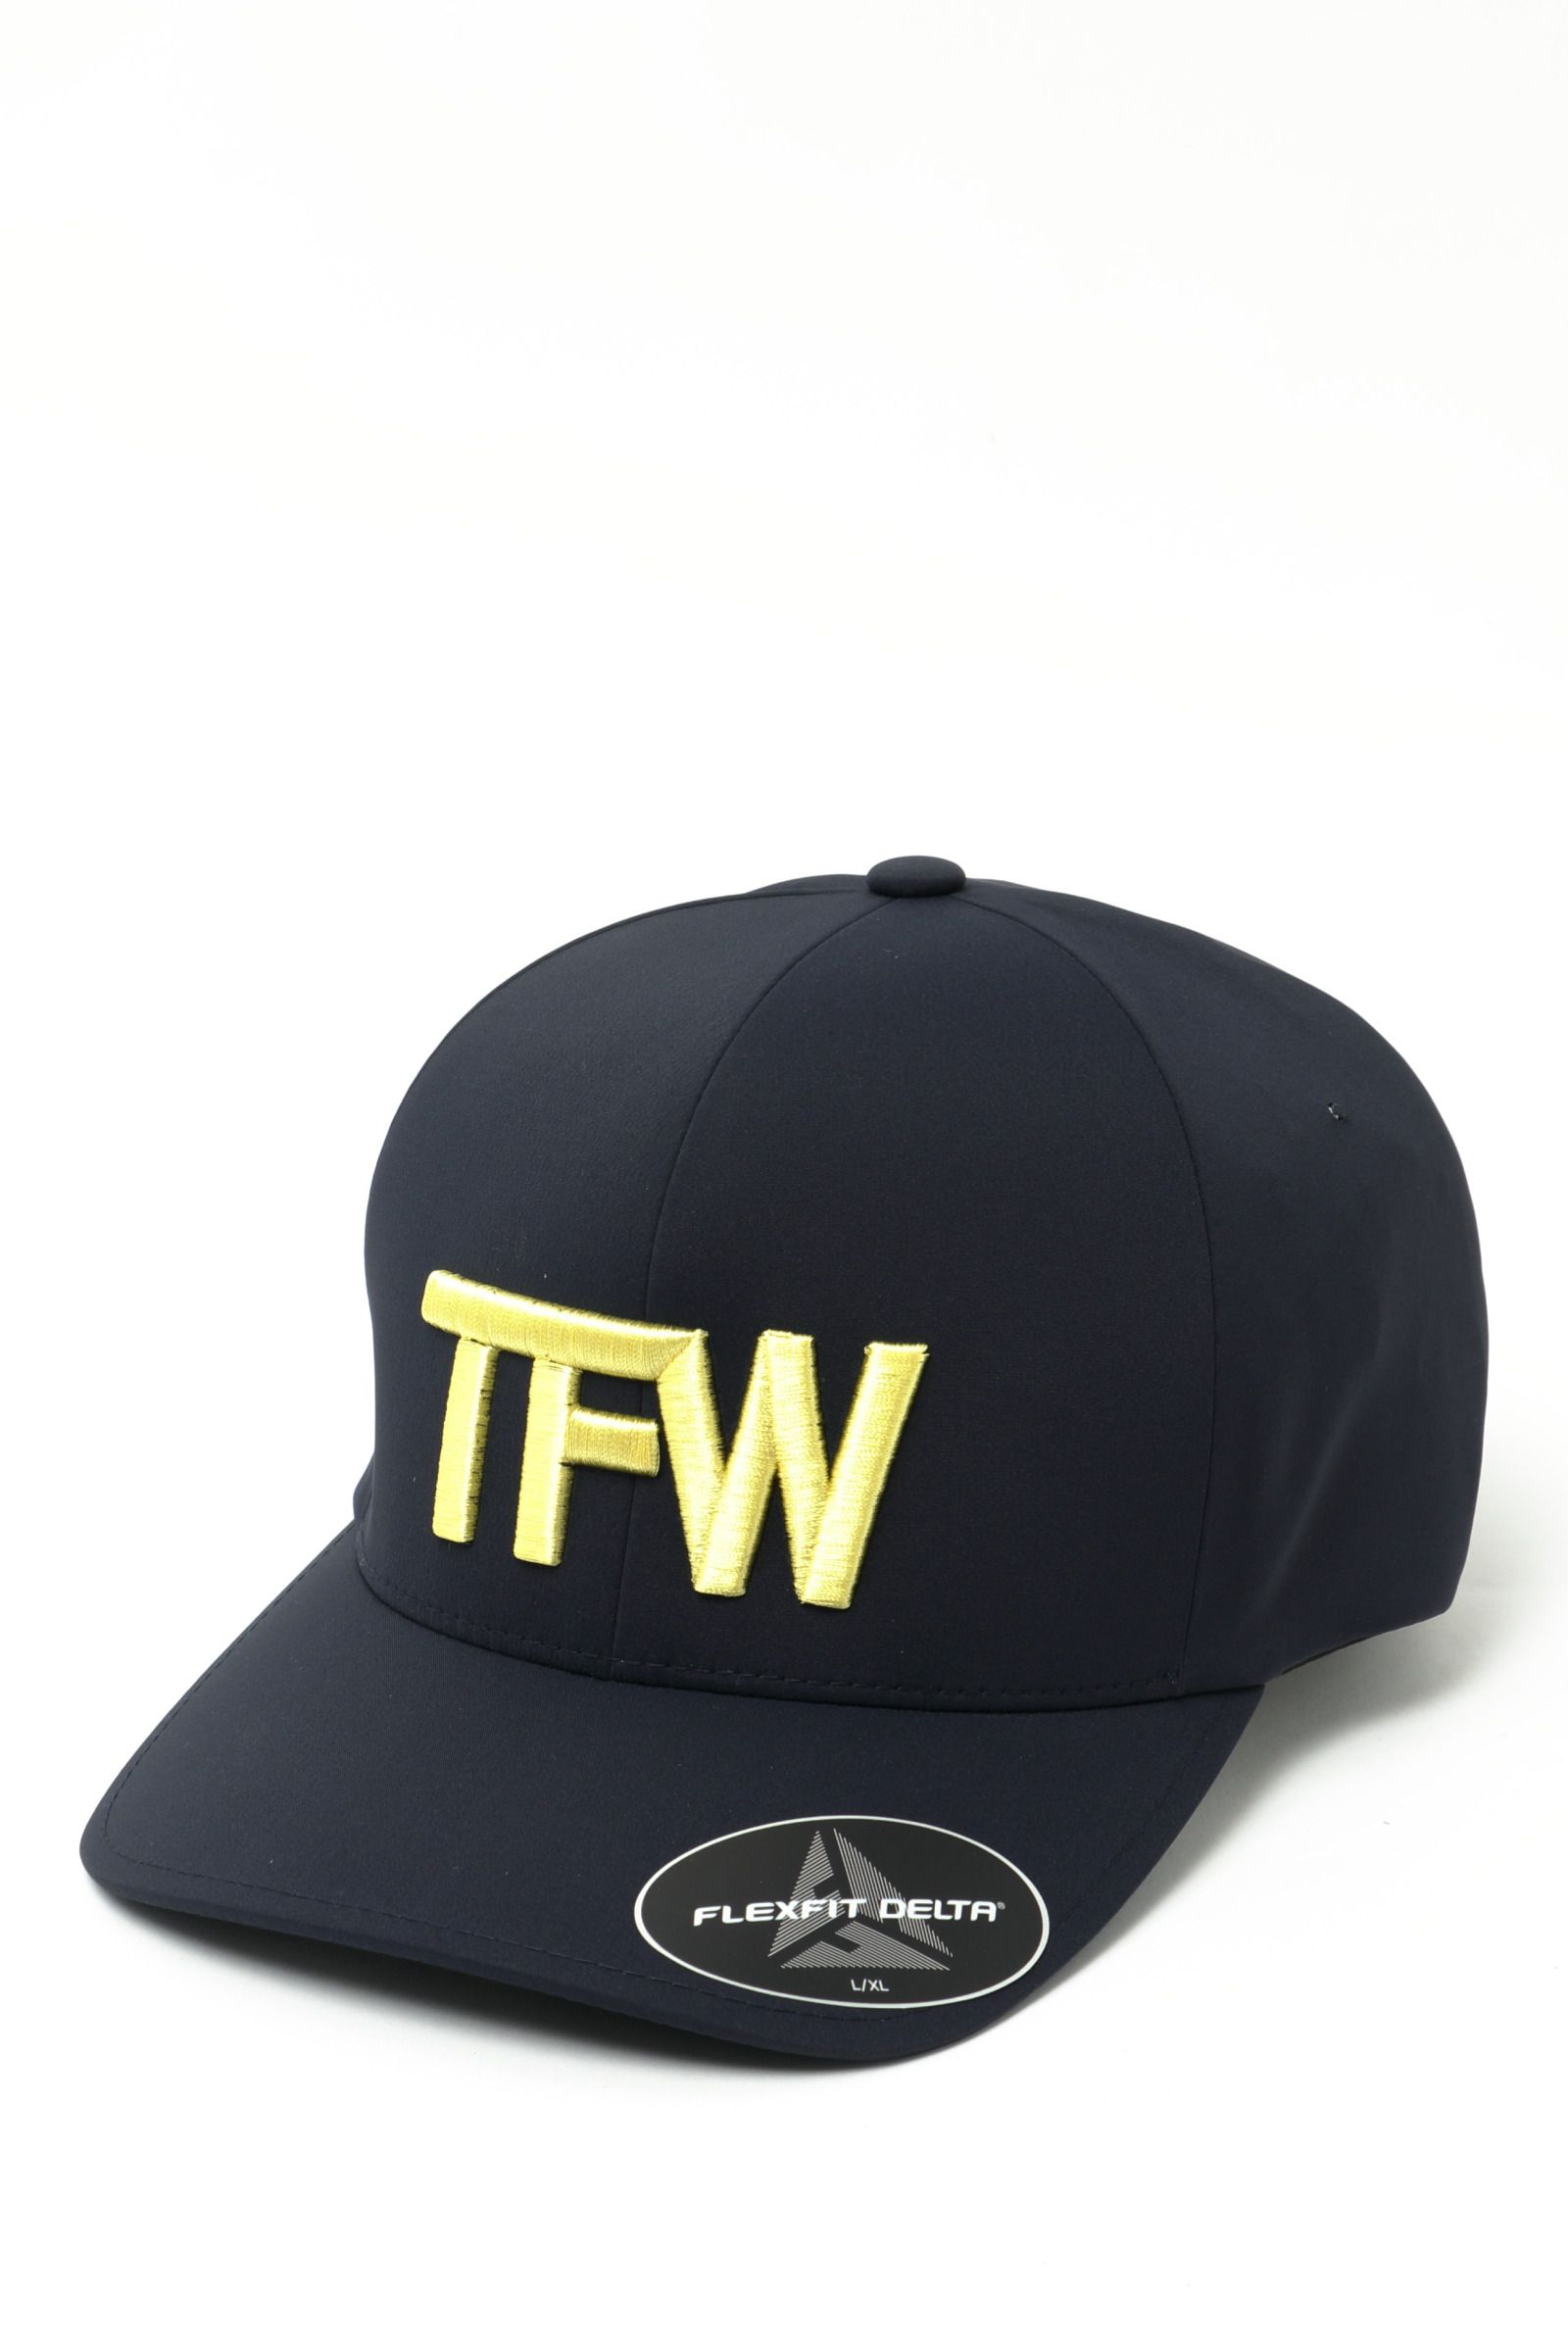 TFW49 - ポリエステル 防臭 防菌 キャップ PANEL CAP / ダークグレー 